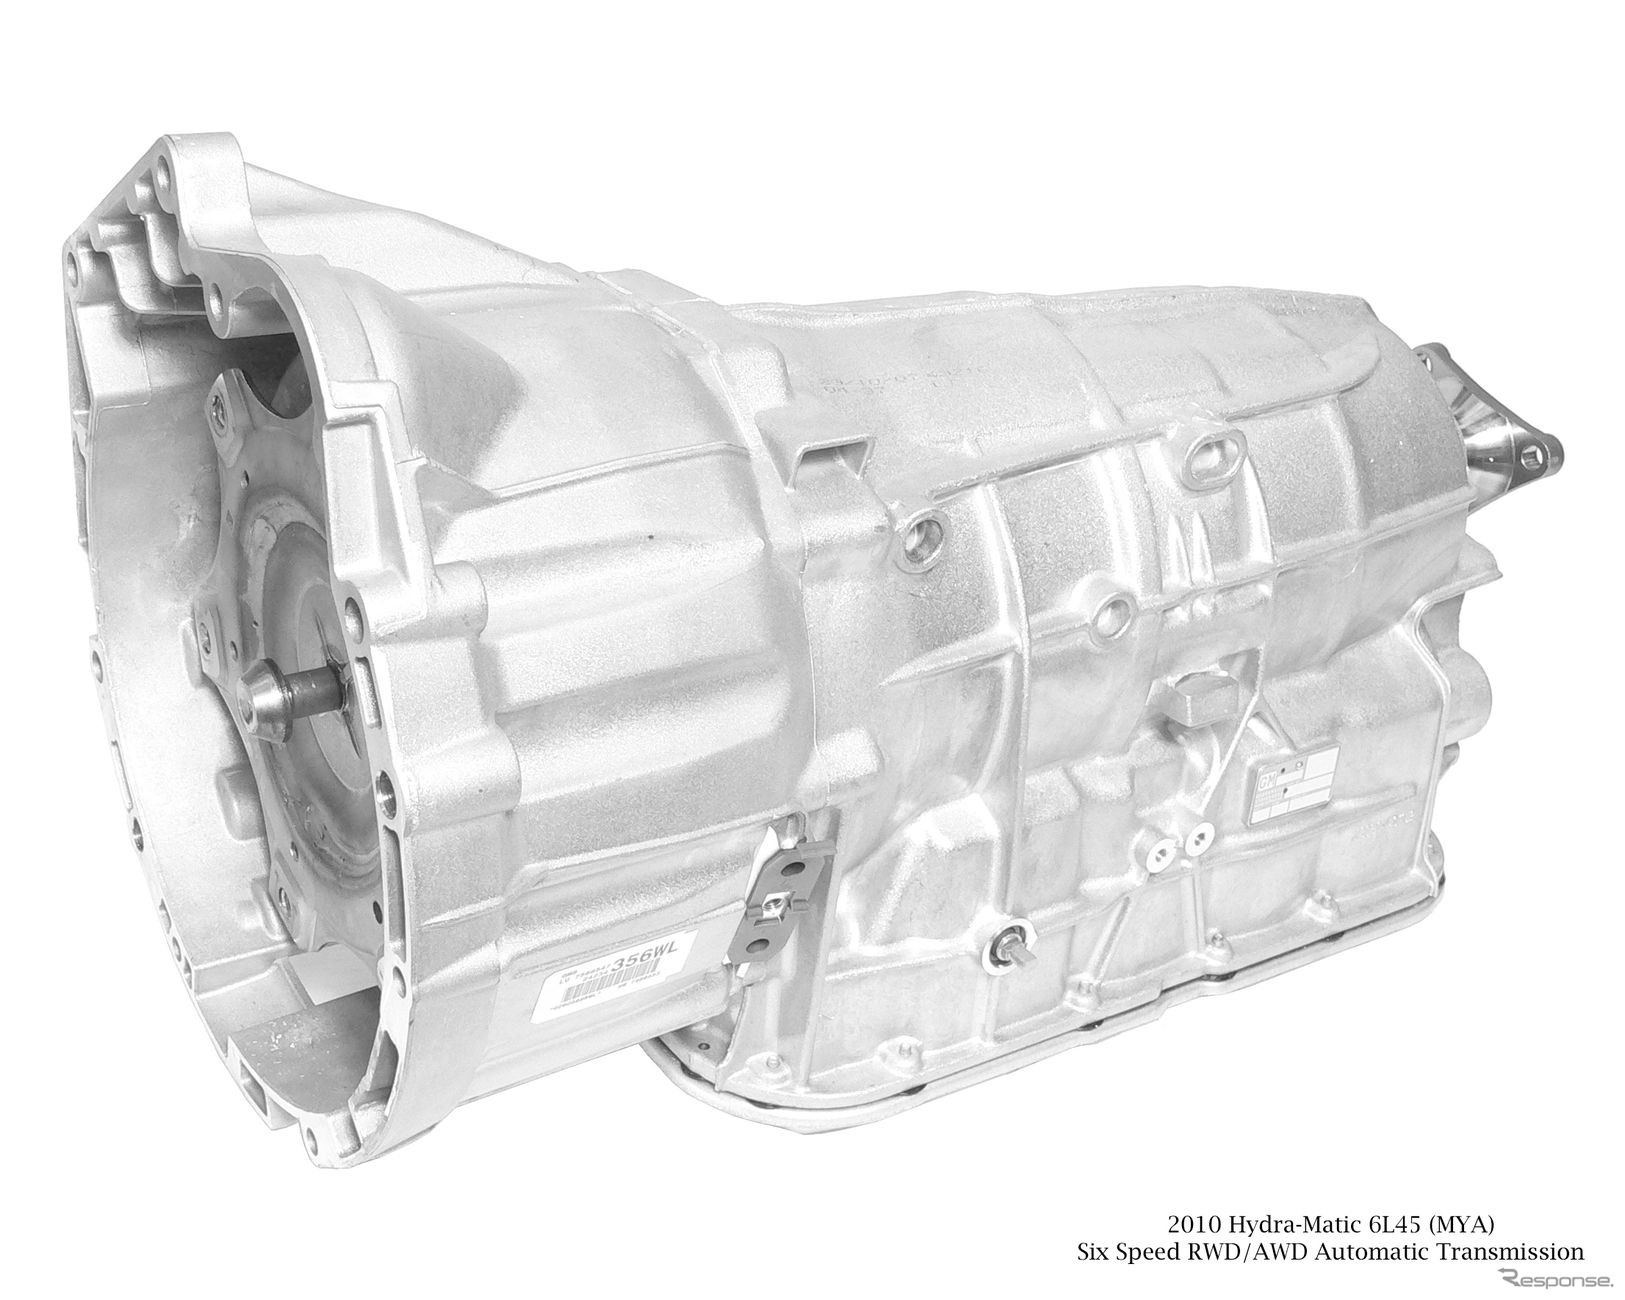 GMの仏ストラスブール工場製の6L45型トランスミッション